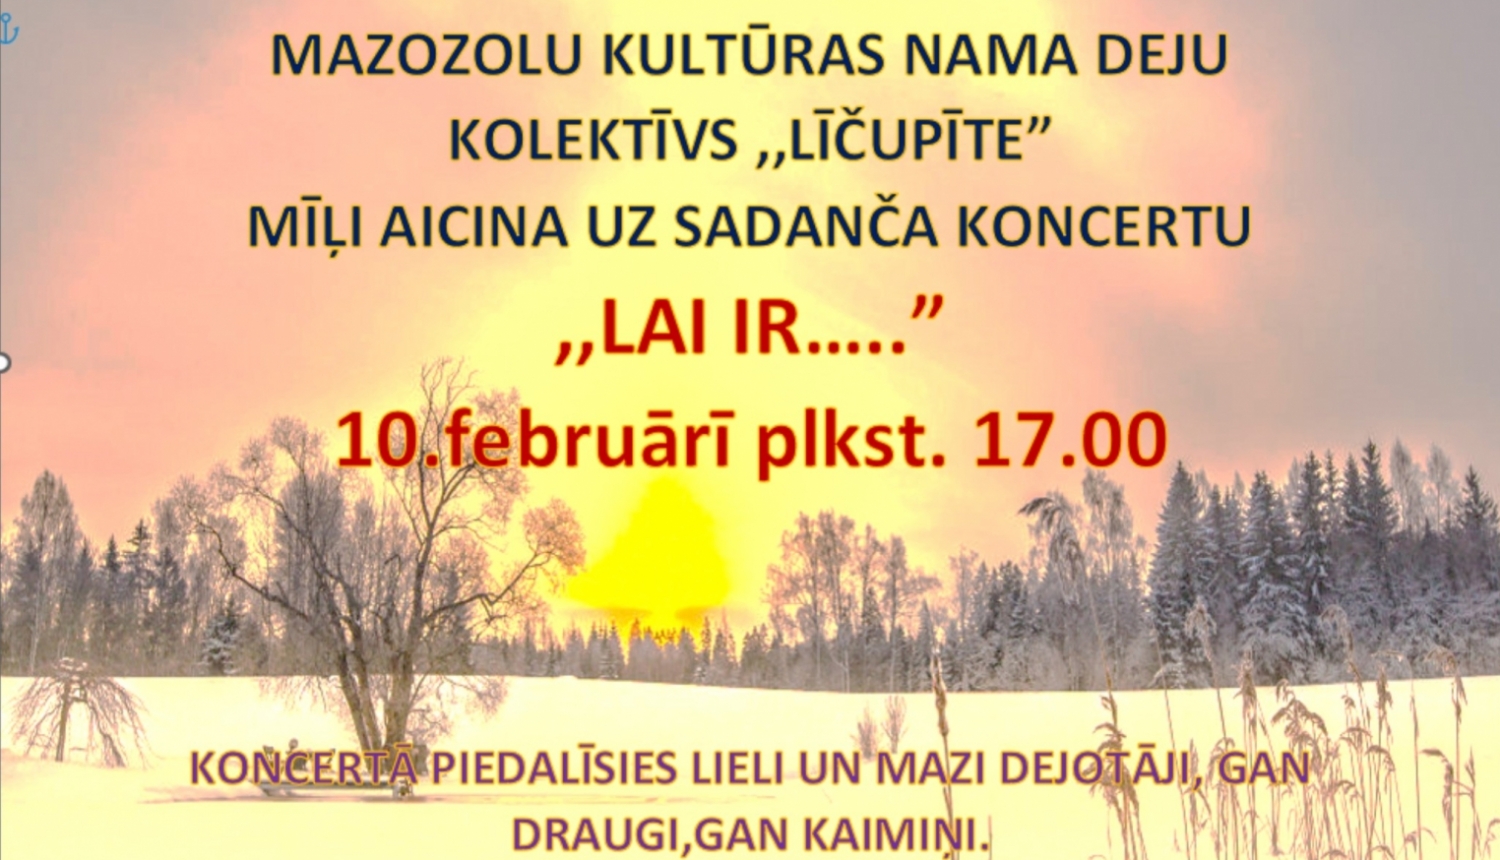 Deju kolektīvu koncerts "Lai ir.." Mazozolos plakāts 10.02.2024